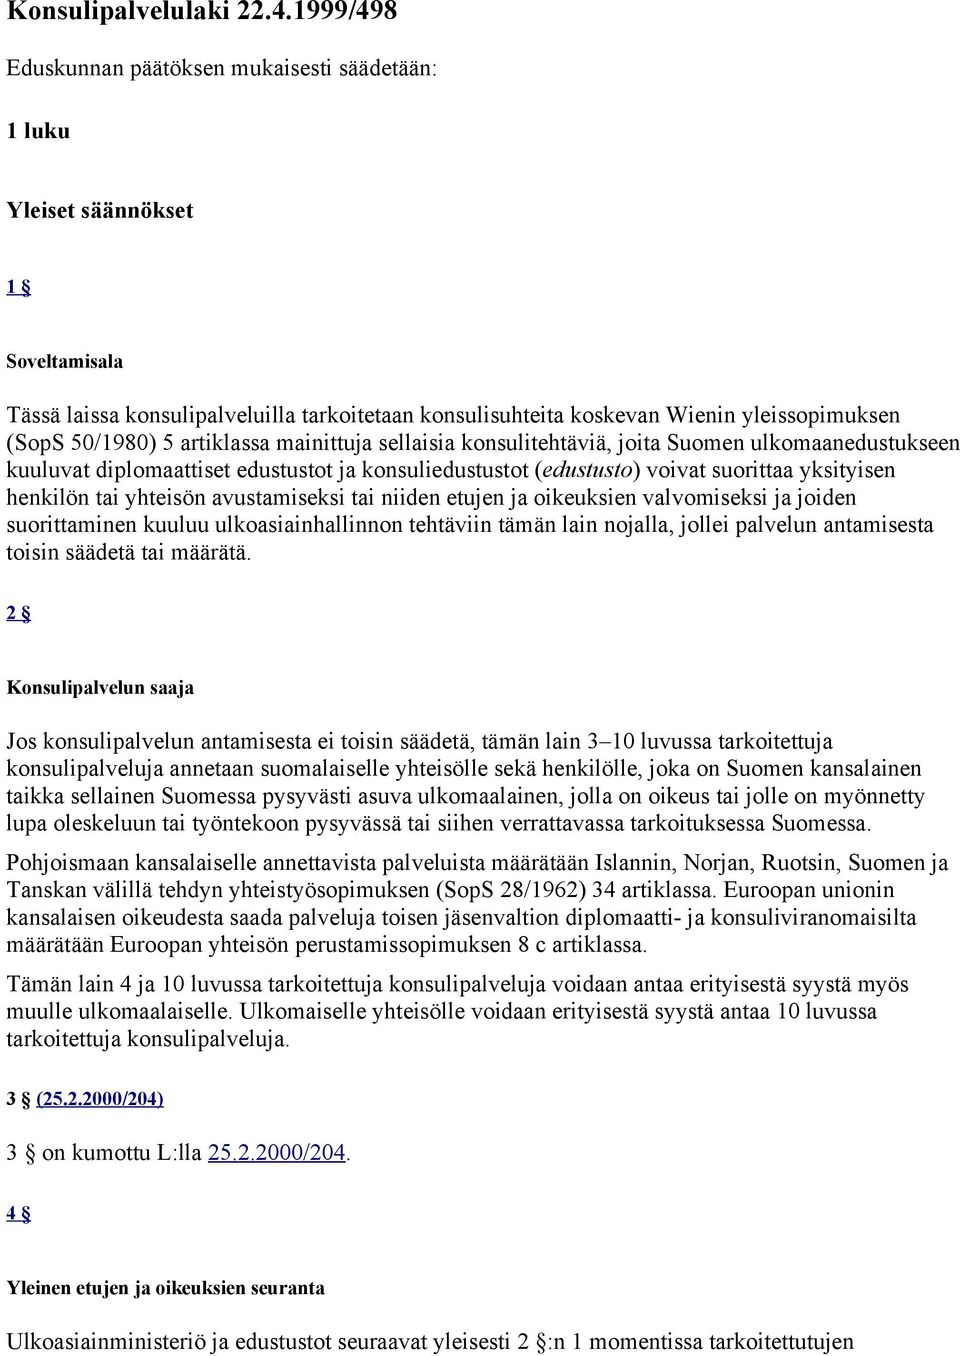 50/1980) 5 artiklassa mainittuja sellaisia konsulitehtäviä, joita Suomen ulkomaanedustukseen kuuluvat diplomaattiset edustustot ja konsuliedustustot (edustusto) voivat suorittaa yksityisen henkilön